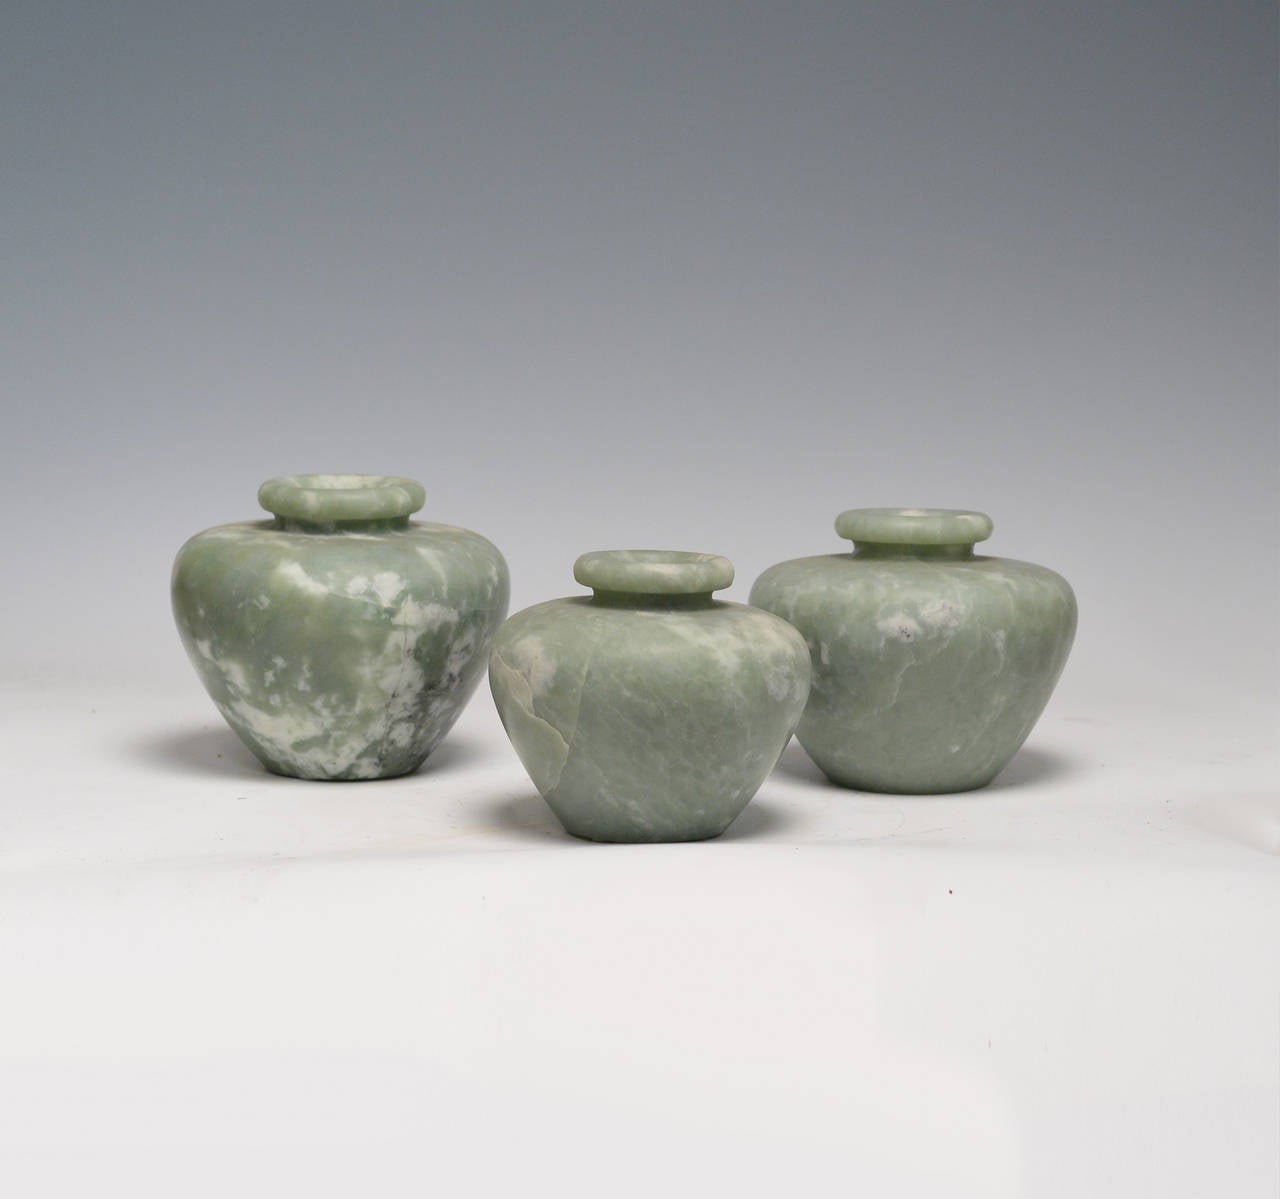 Group of three fine carved celadon jade jars.
Measure: 6